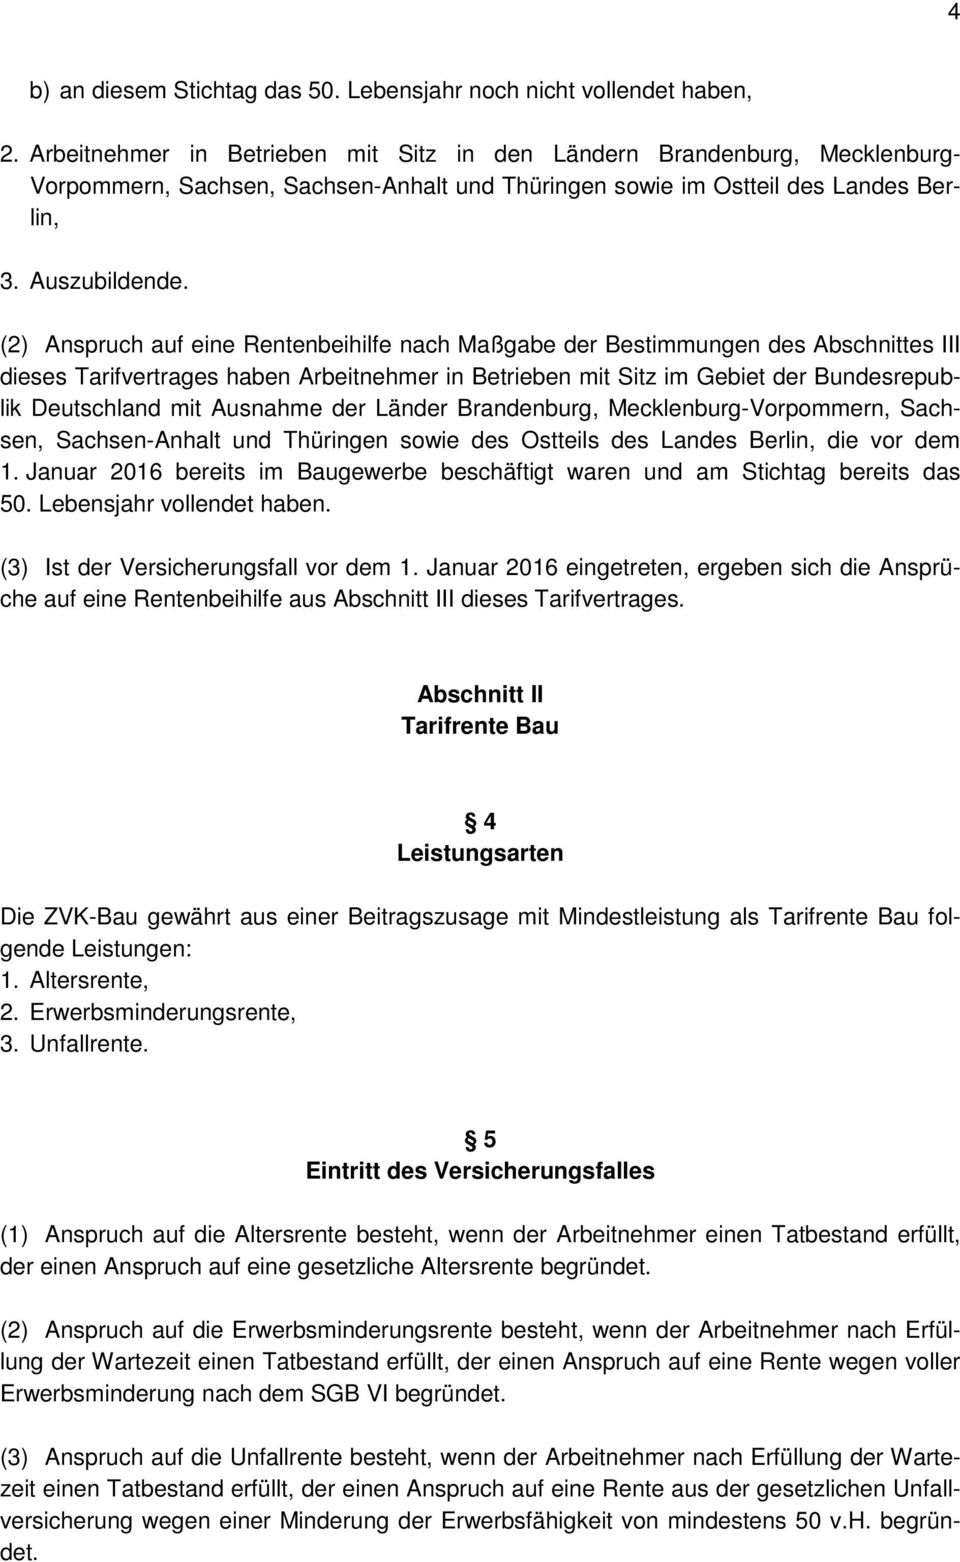 (2) Anspruch auf eine Rentenbeihilfe nach Maßgabe der Bestimmungen des Abschnittes III dieses Tarifvertrages haben Arbeitnehmer in Betrieben mit Sitz im Gebiet der Bundesrepublik Deutschland mit